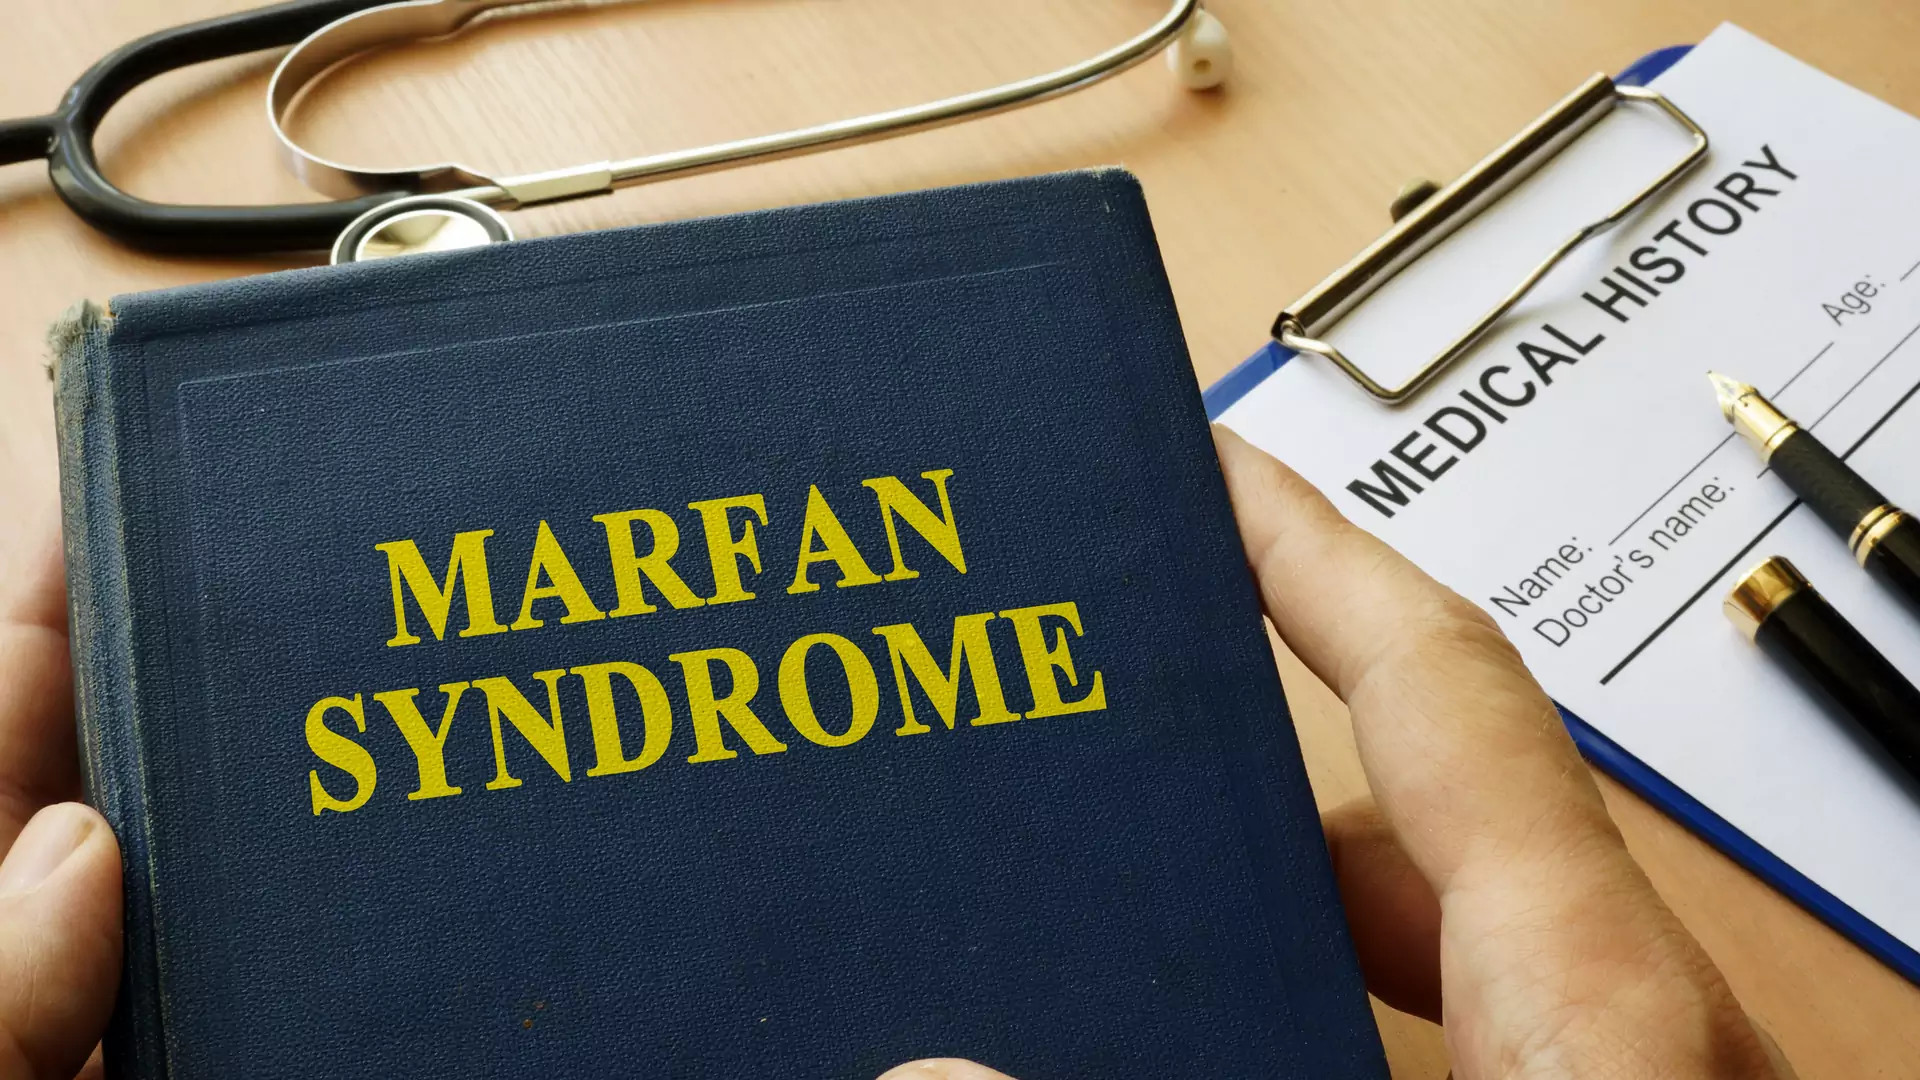 Zespół Marfana – choroba pięknych ludzi